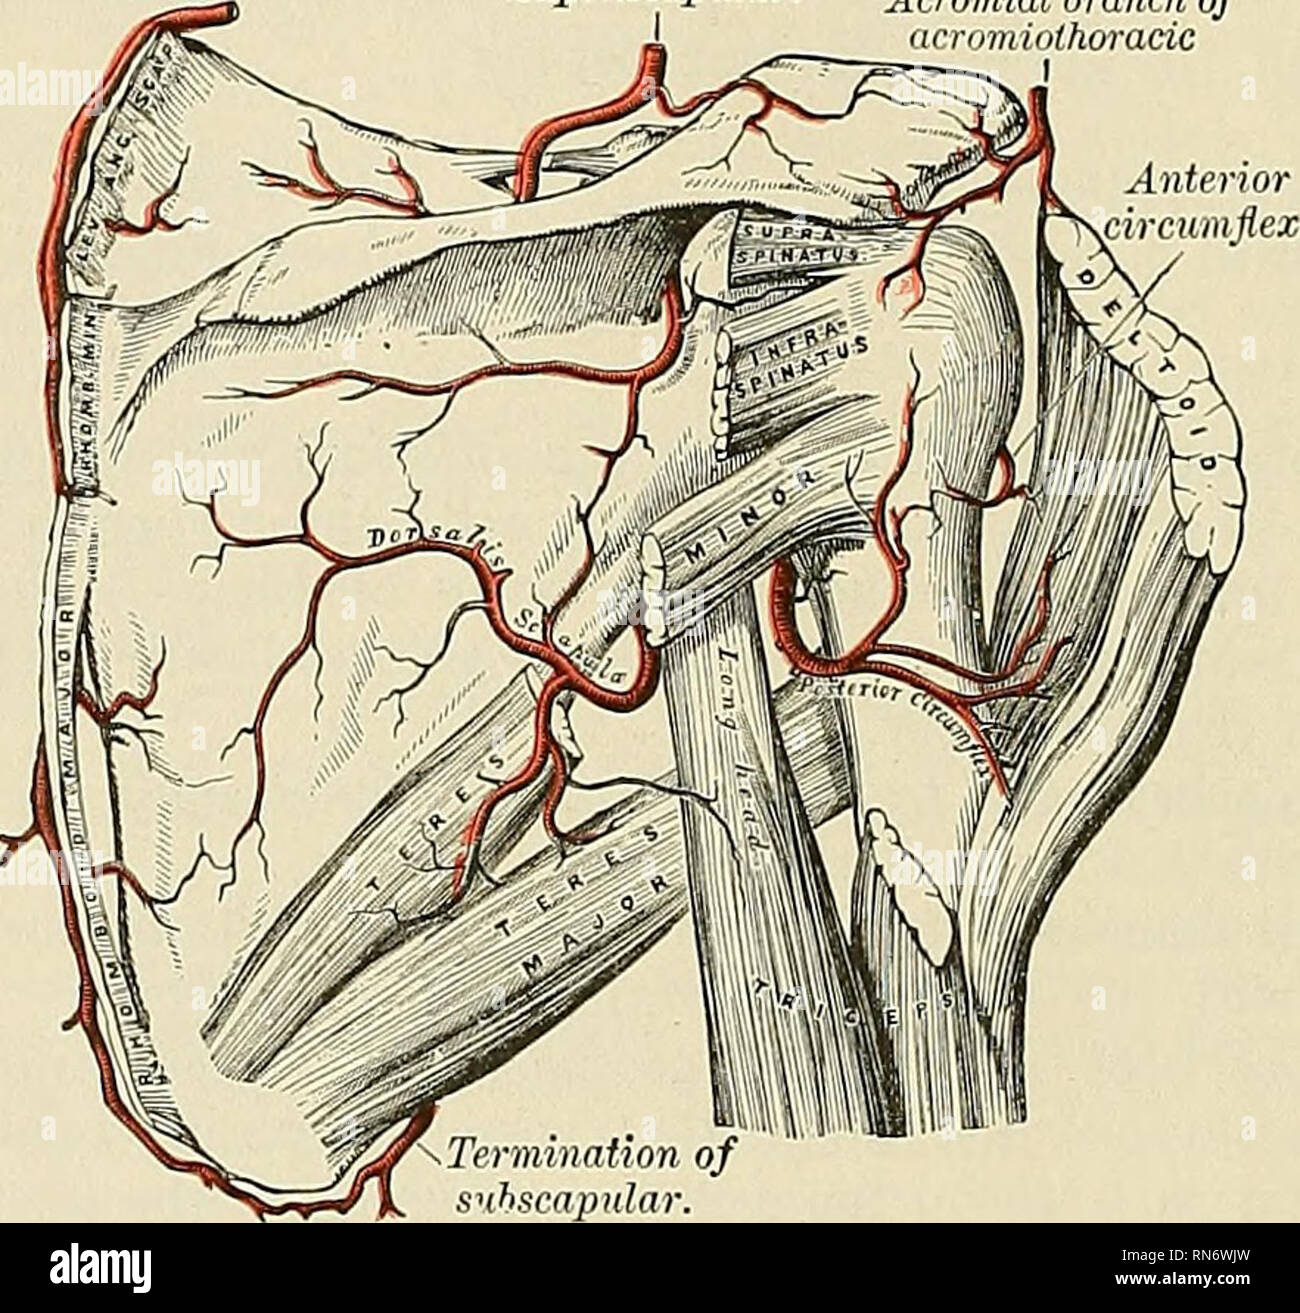 . Anatomie, beschreibende und angewendet werden. Anatomie. 630 Das GEFÄSSSYSTEM der sternalen Zweig, der über den Sternalen Ende des Schlüsselbeins Kreuze auf die Haut von den oberen Teil des Thorax; und ein supra-acromial Zweig {Ramus acromialls), das Piercing der M. trapezius, versorgt die Haut über dem Schulterdach, anastomosing Bereich mit einem Zweig der acromiothoracic Arterie. Eine kleine subscapular Zweig ist gegeben, wie die arterie verläuft über die transverse Ligament des Schulterblattes; es steigt in die Fossa, subscapular verzweigt unterhalb des Subscapular muscle und anastomosen mit der Posterioren und subscapular Stockfoto